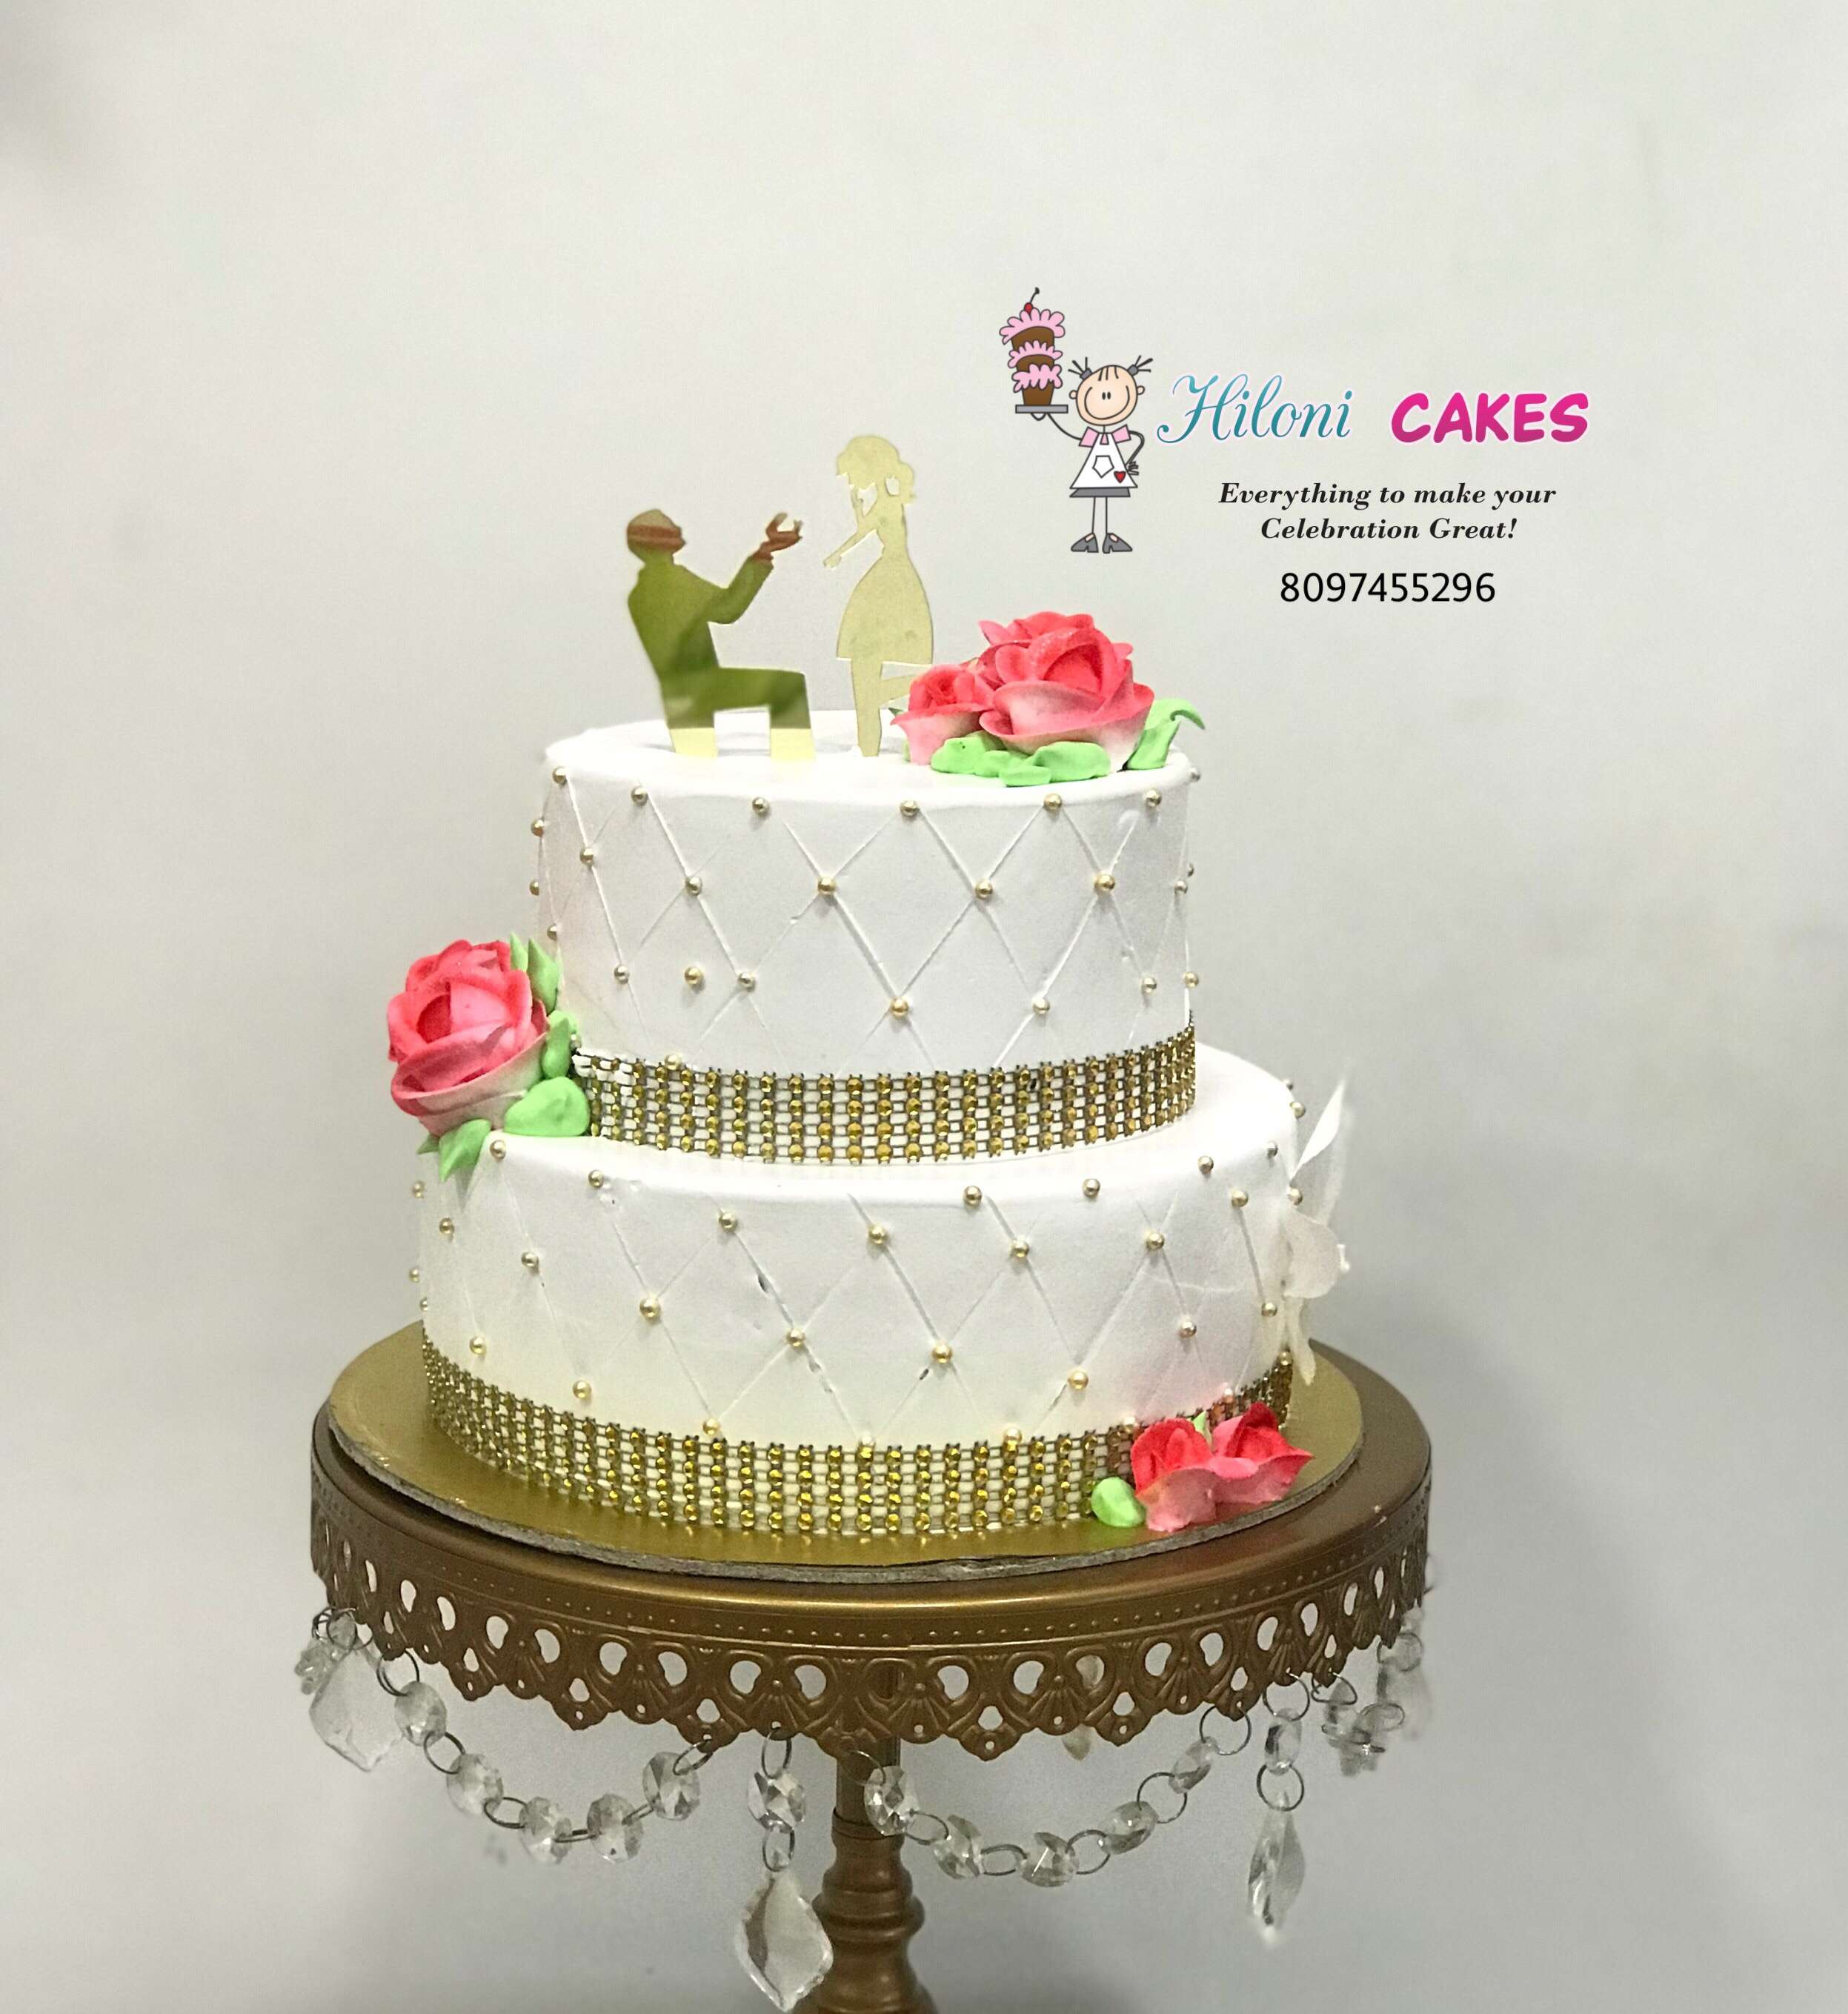 Hiloni Cakes - Unicorn gravity defying cake 🦄😍❤️ | Facebook